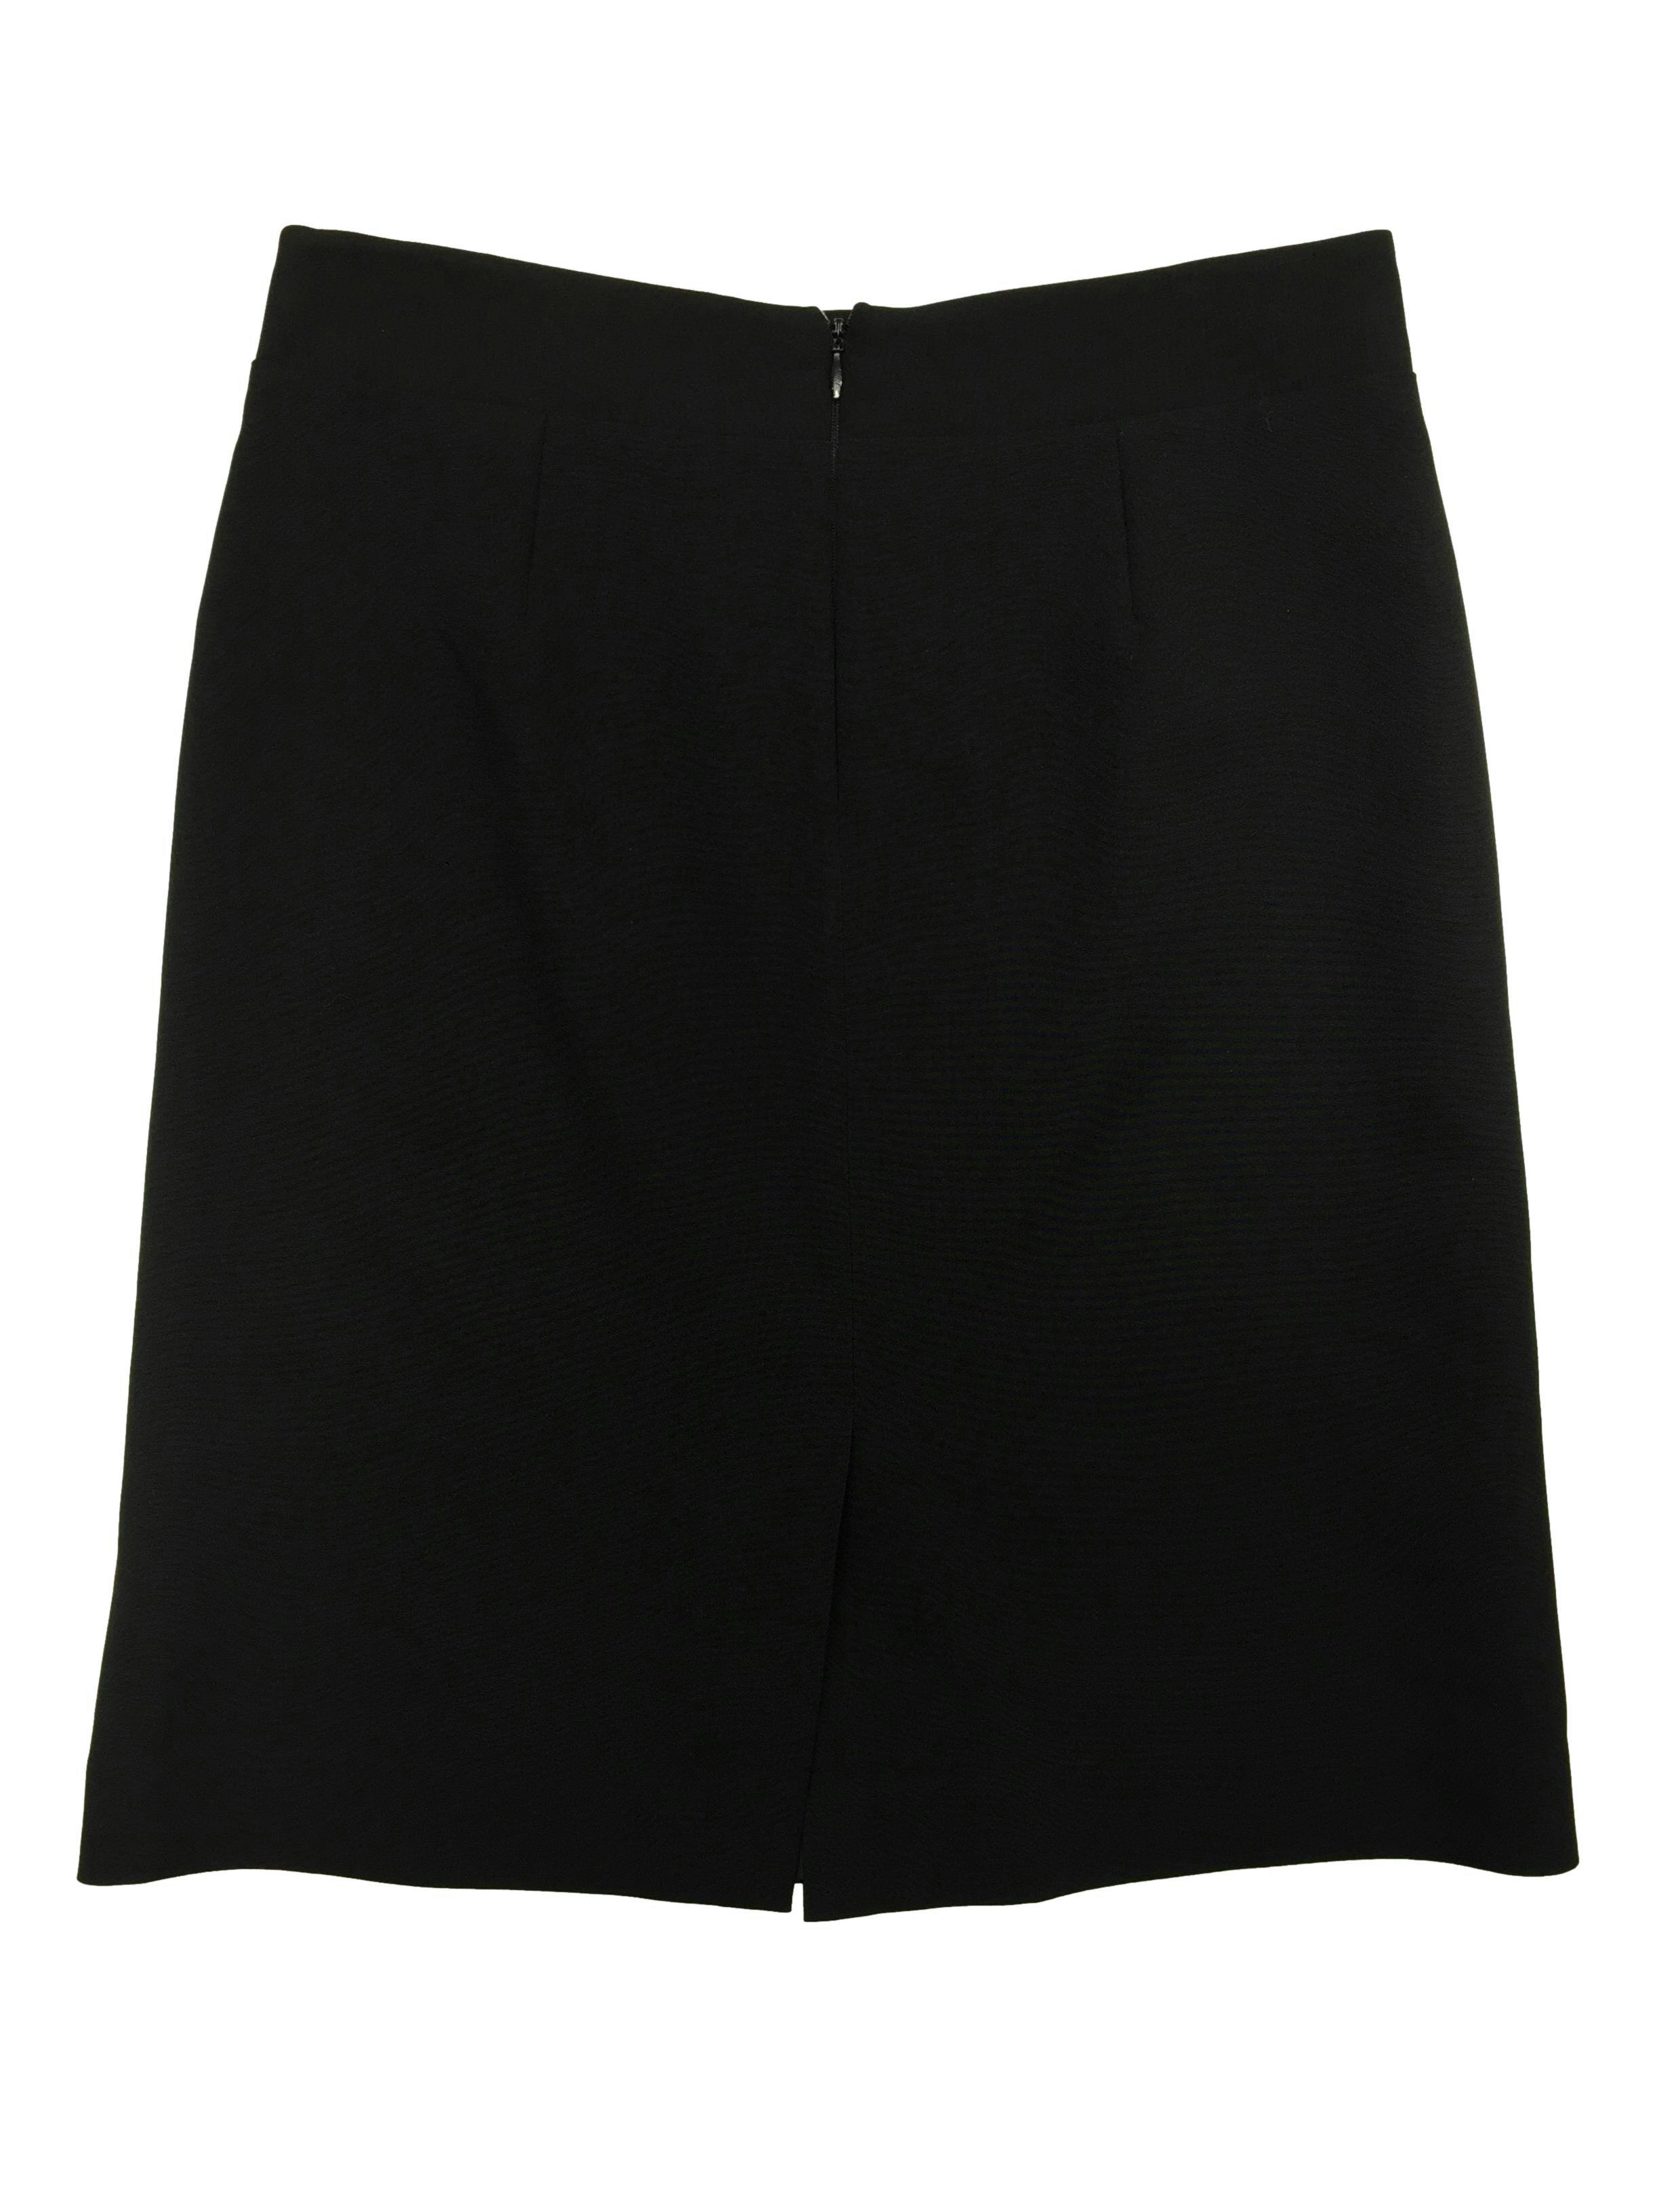 Falda Basement negra con forro, abertura y cierre posterior. Cintura 74cm, Largo 53cm.